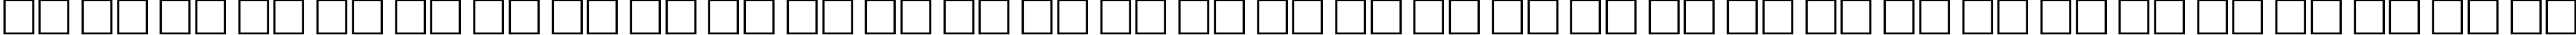 Пример написания русского алфавита шрифтом Antiqua50B